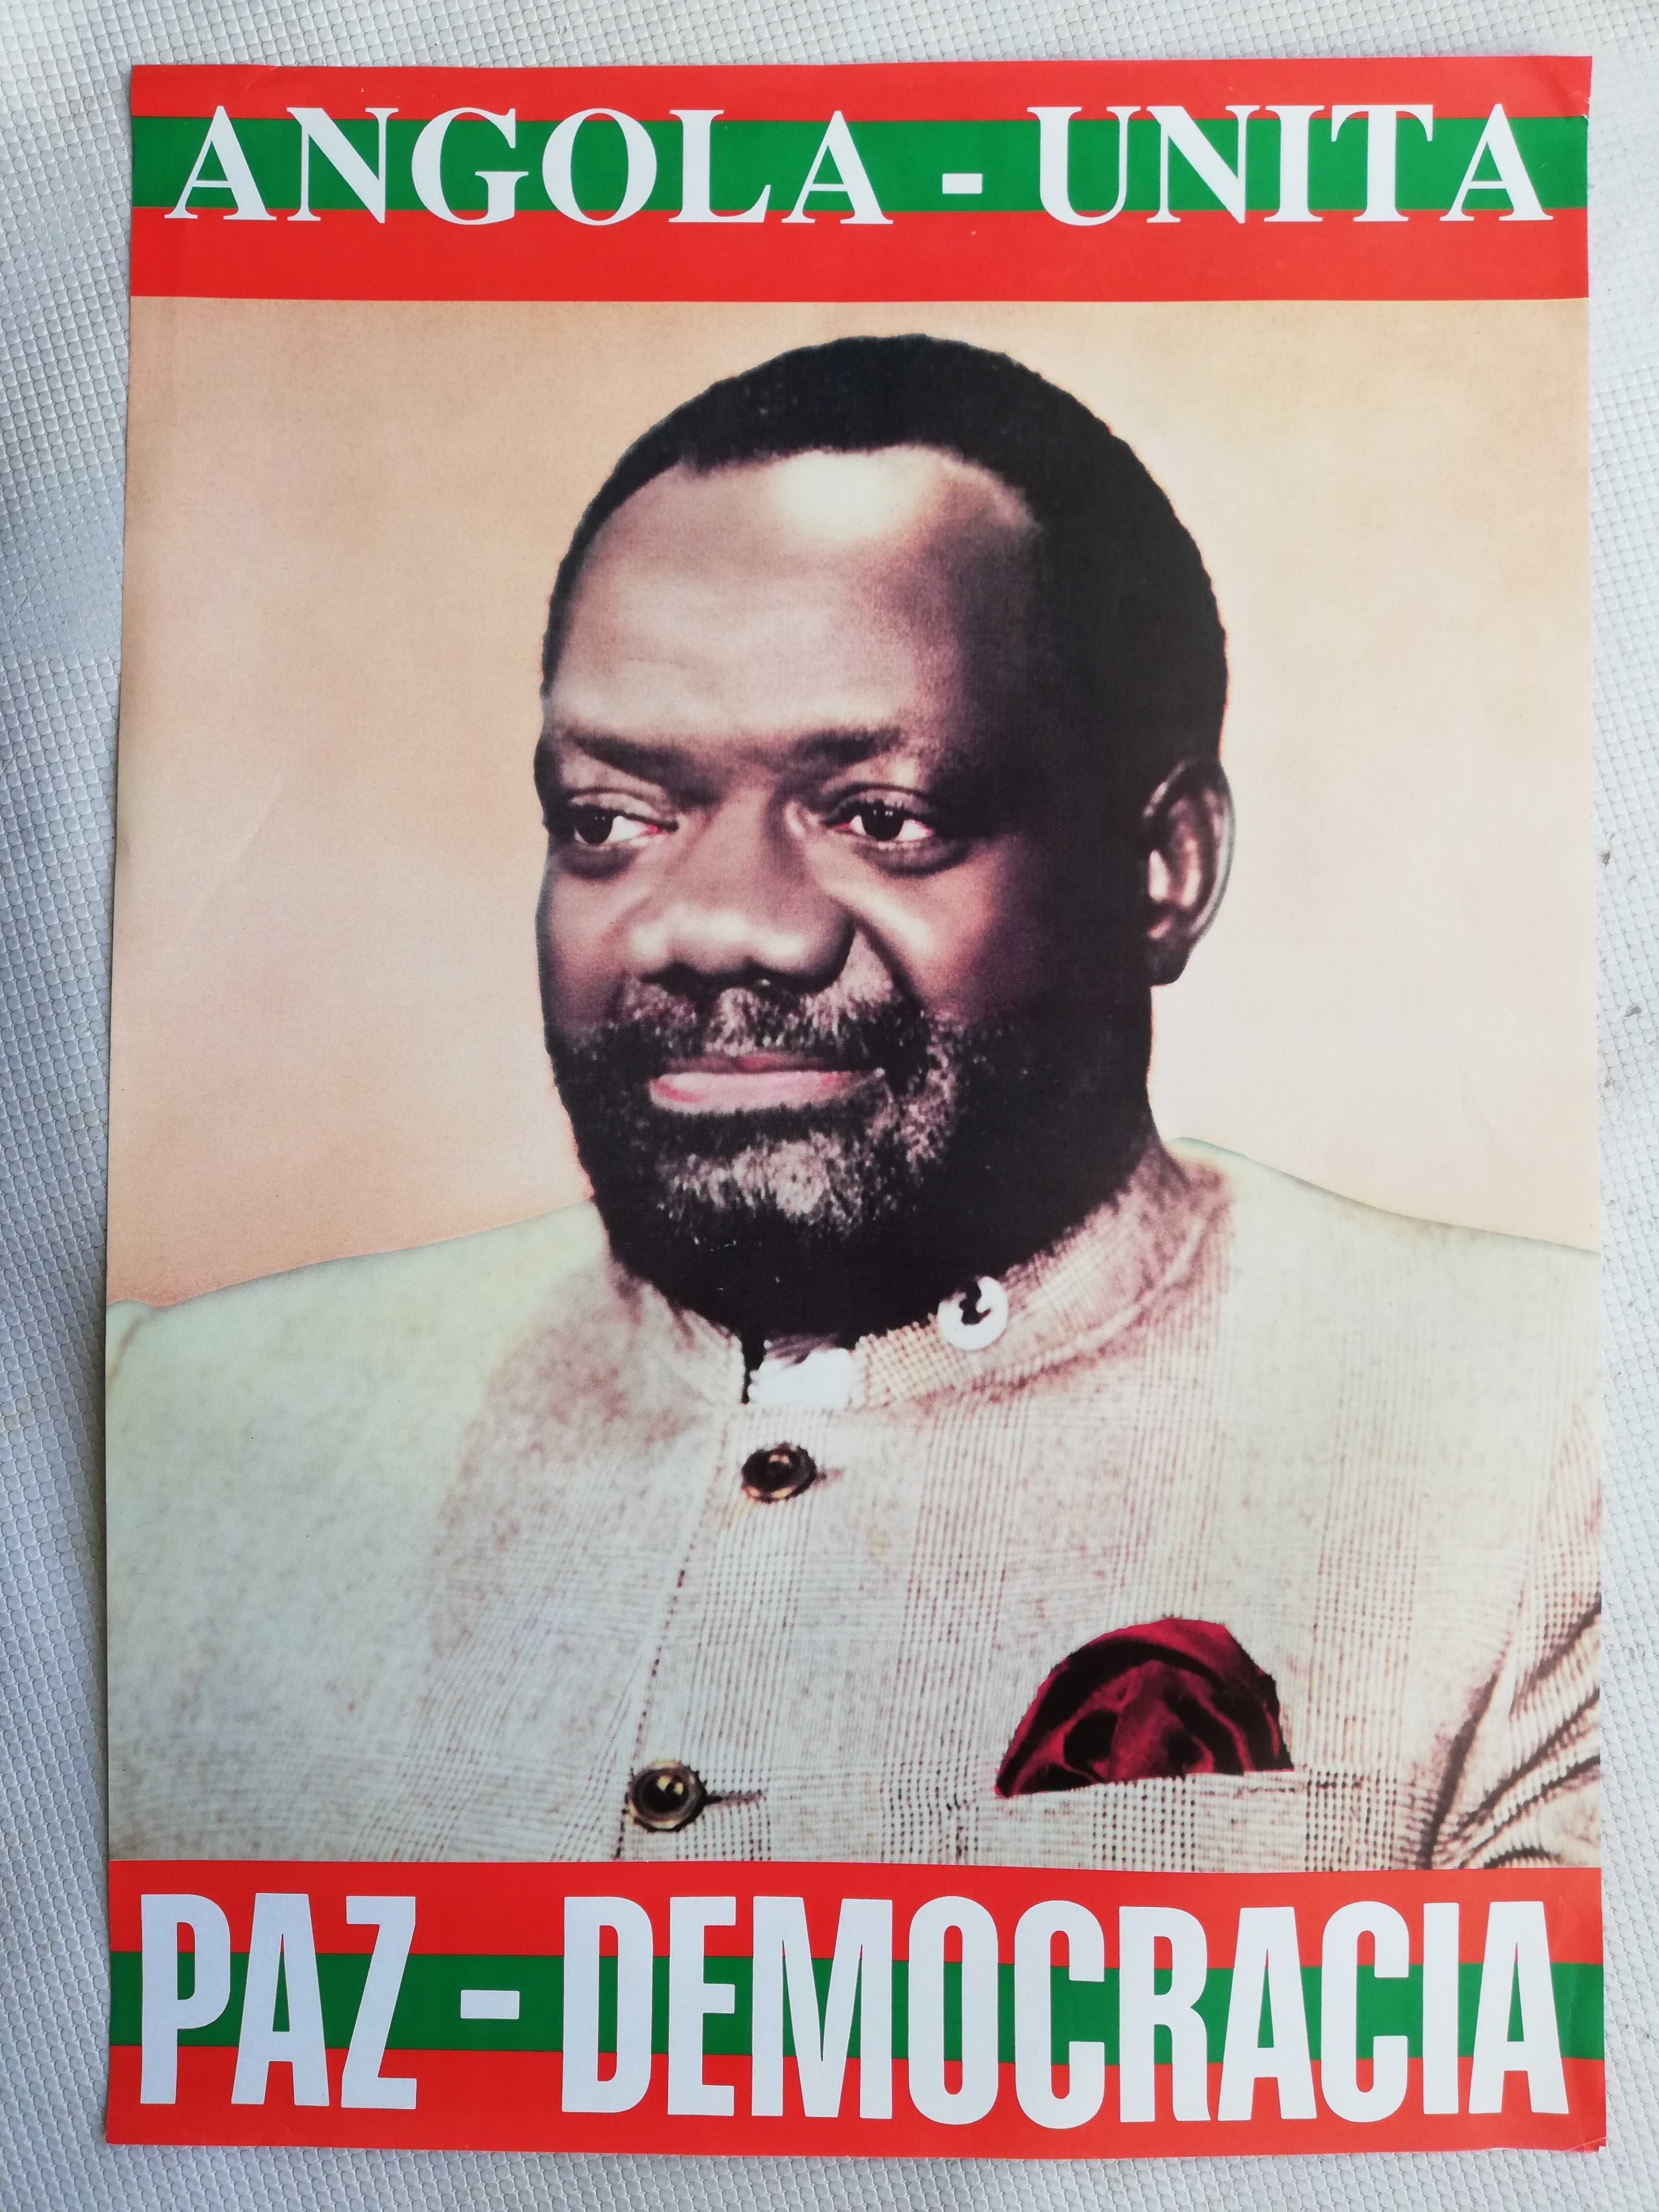 Cartaz político / propaganda UNITA Jonas Savimbi